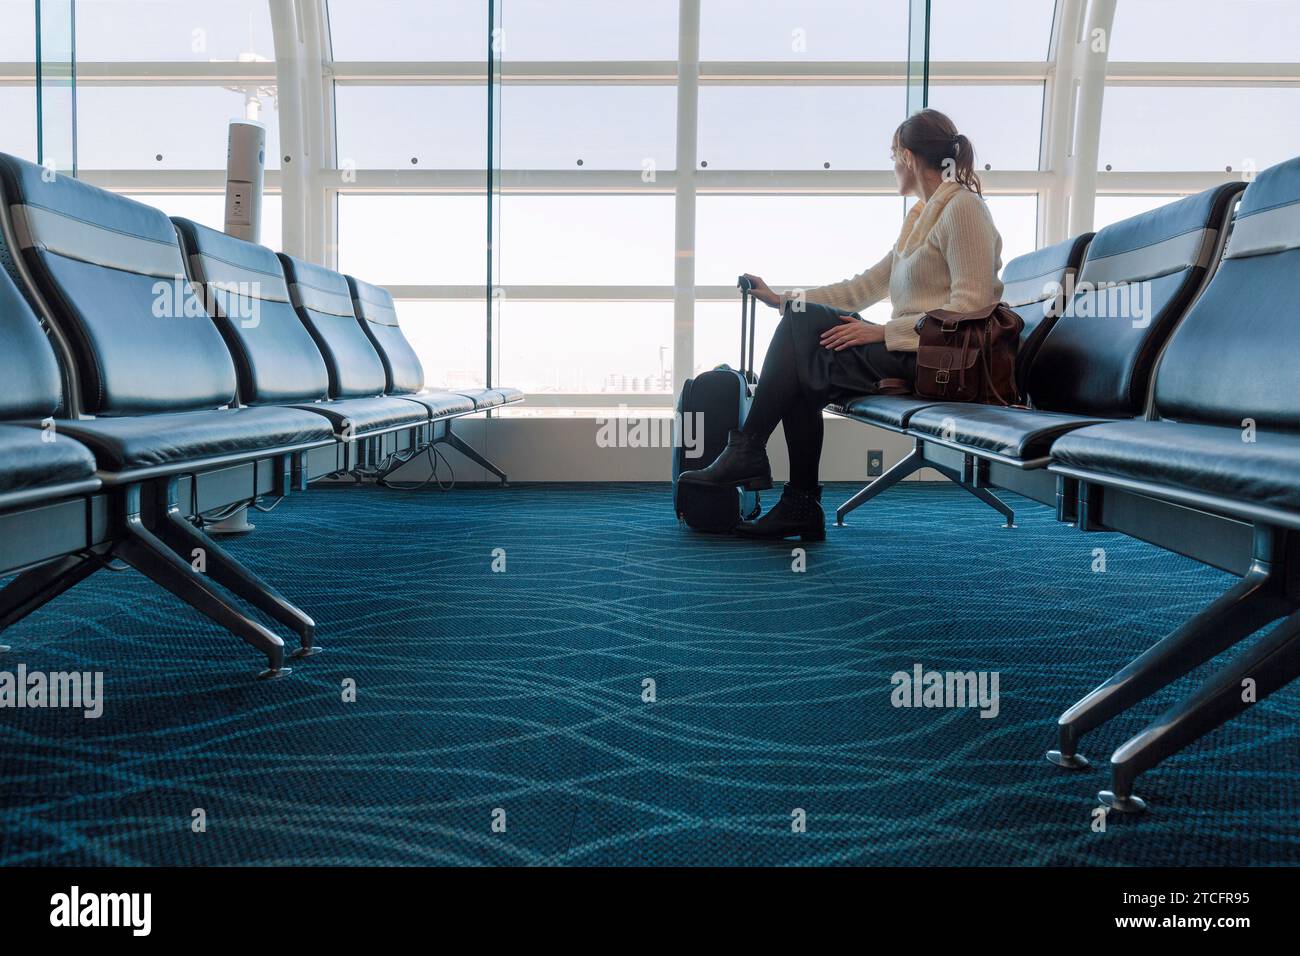 femme assise regardant par le verre d'un terminal d'aéroport Banque D'Images